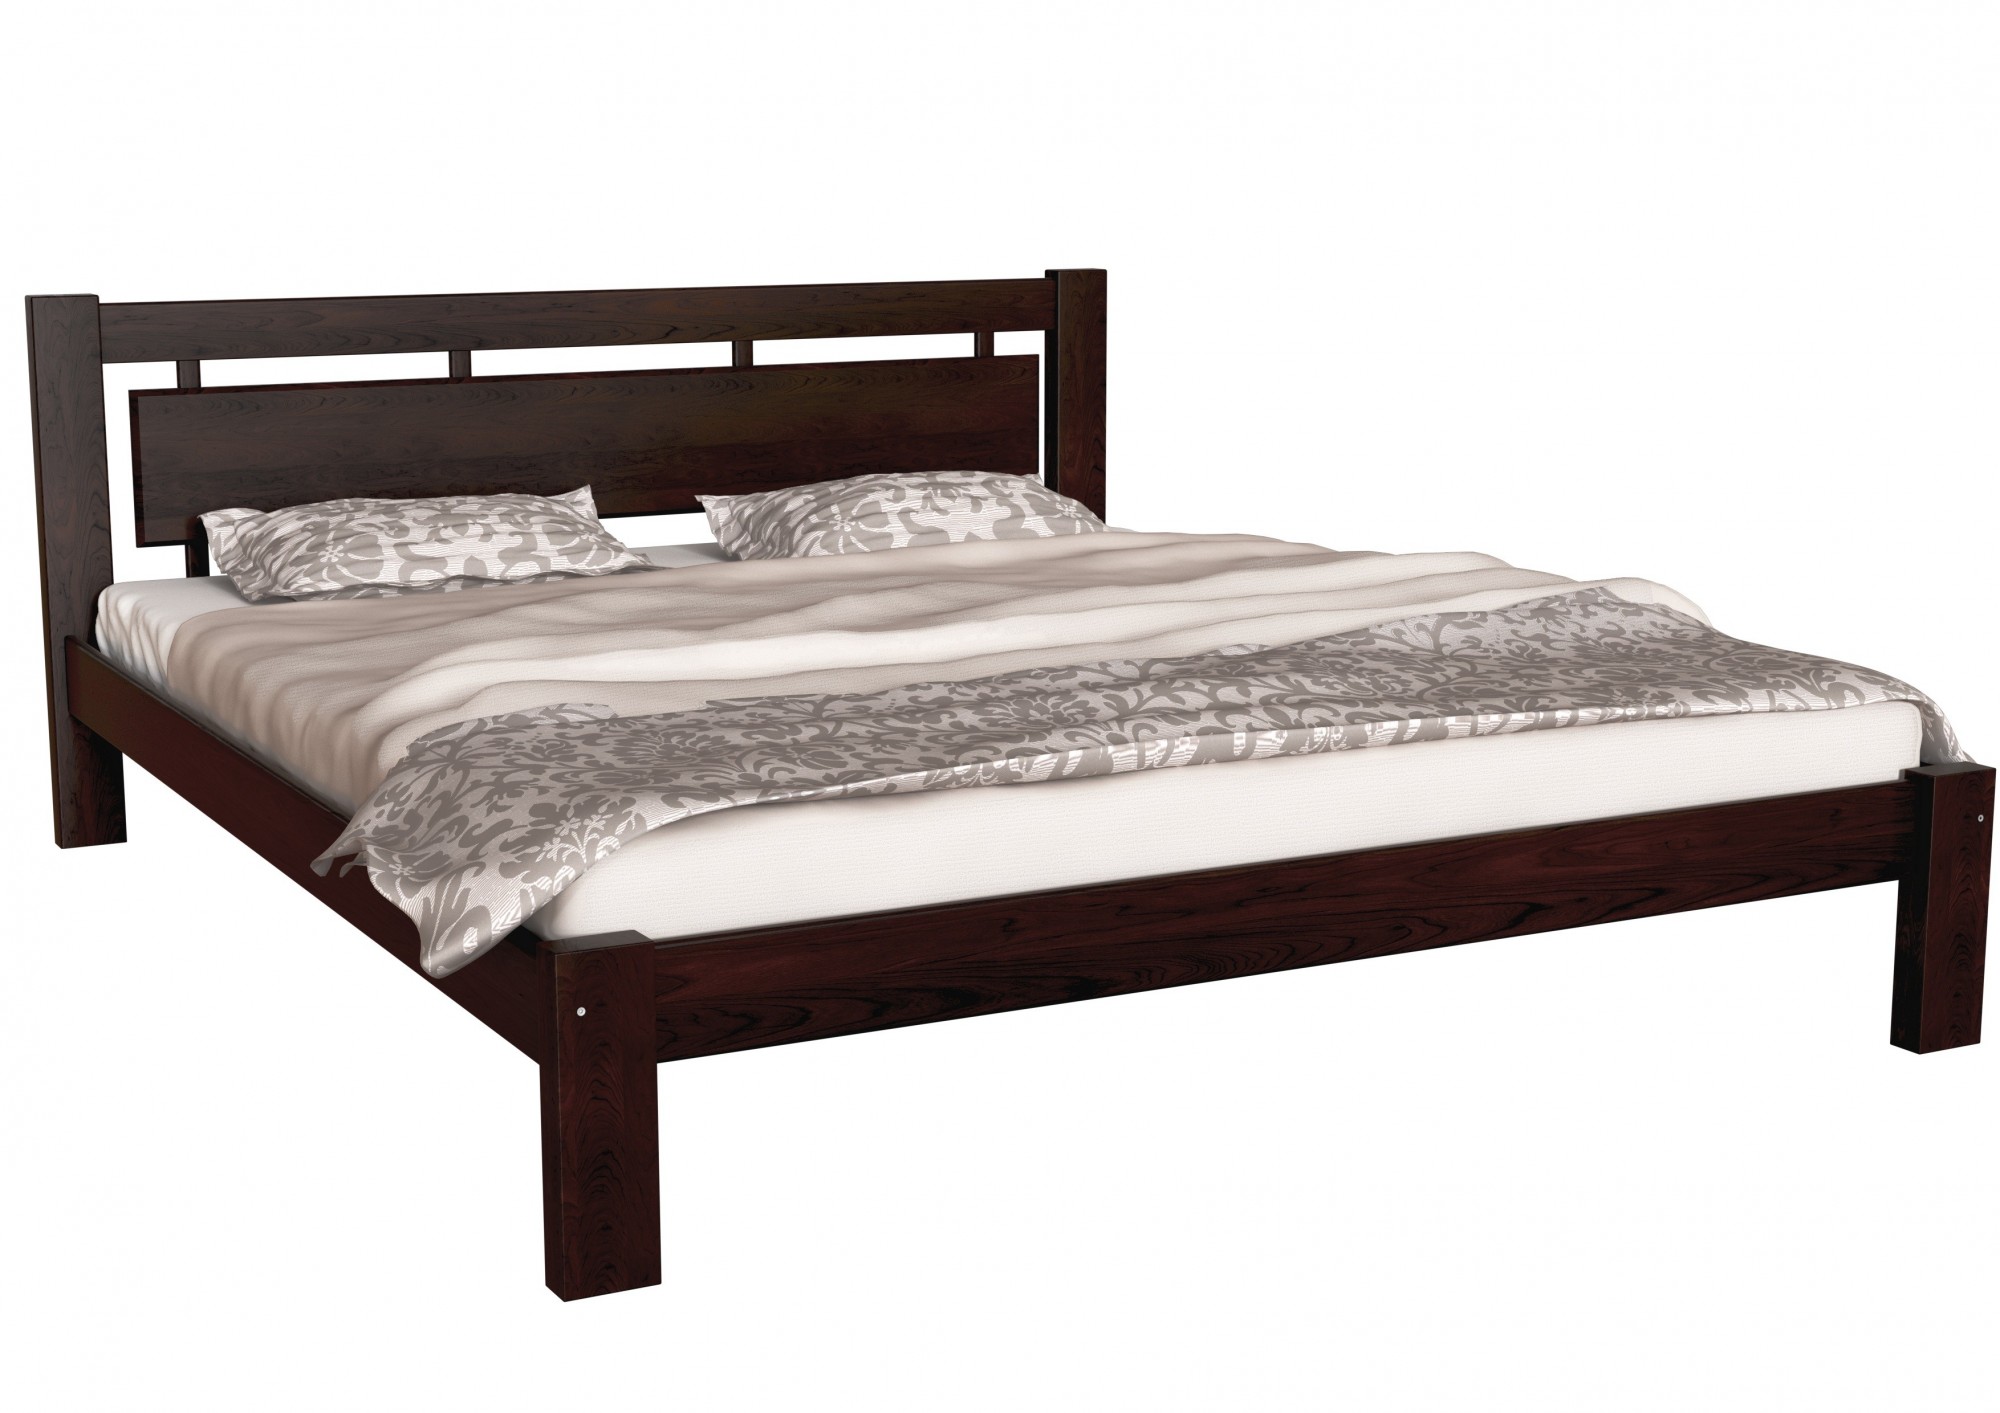 

Двуспальная деревянная кровать Л-210 Скиф 180х200 орех